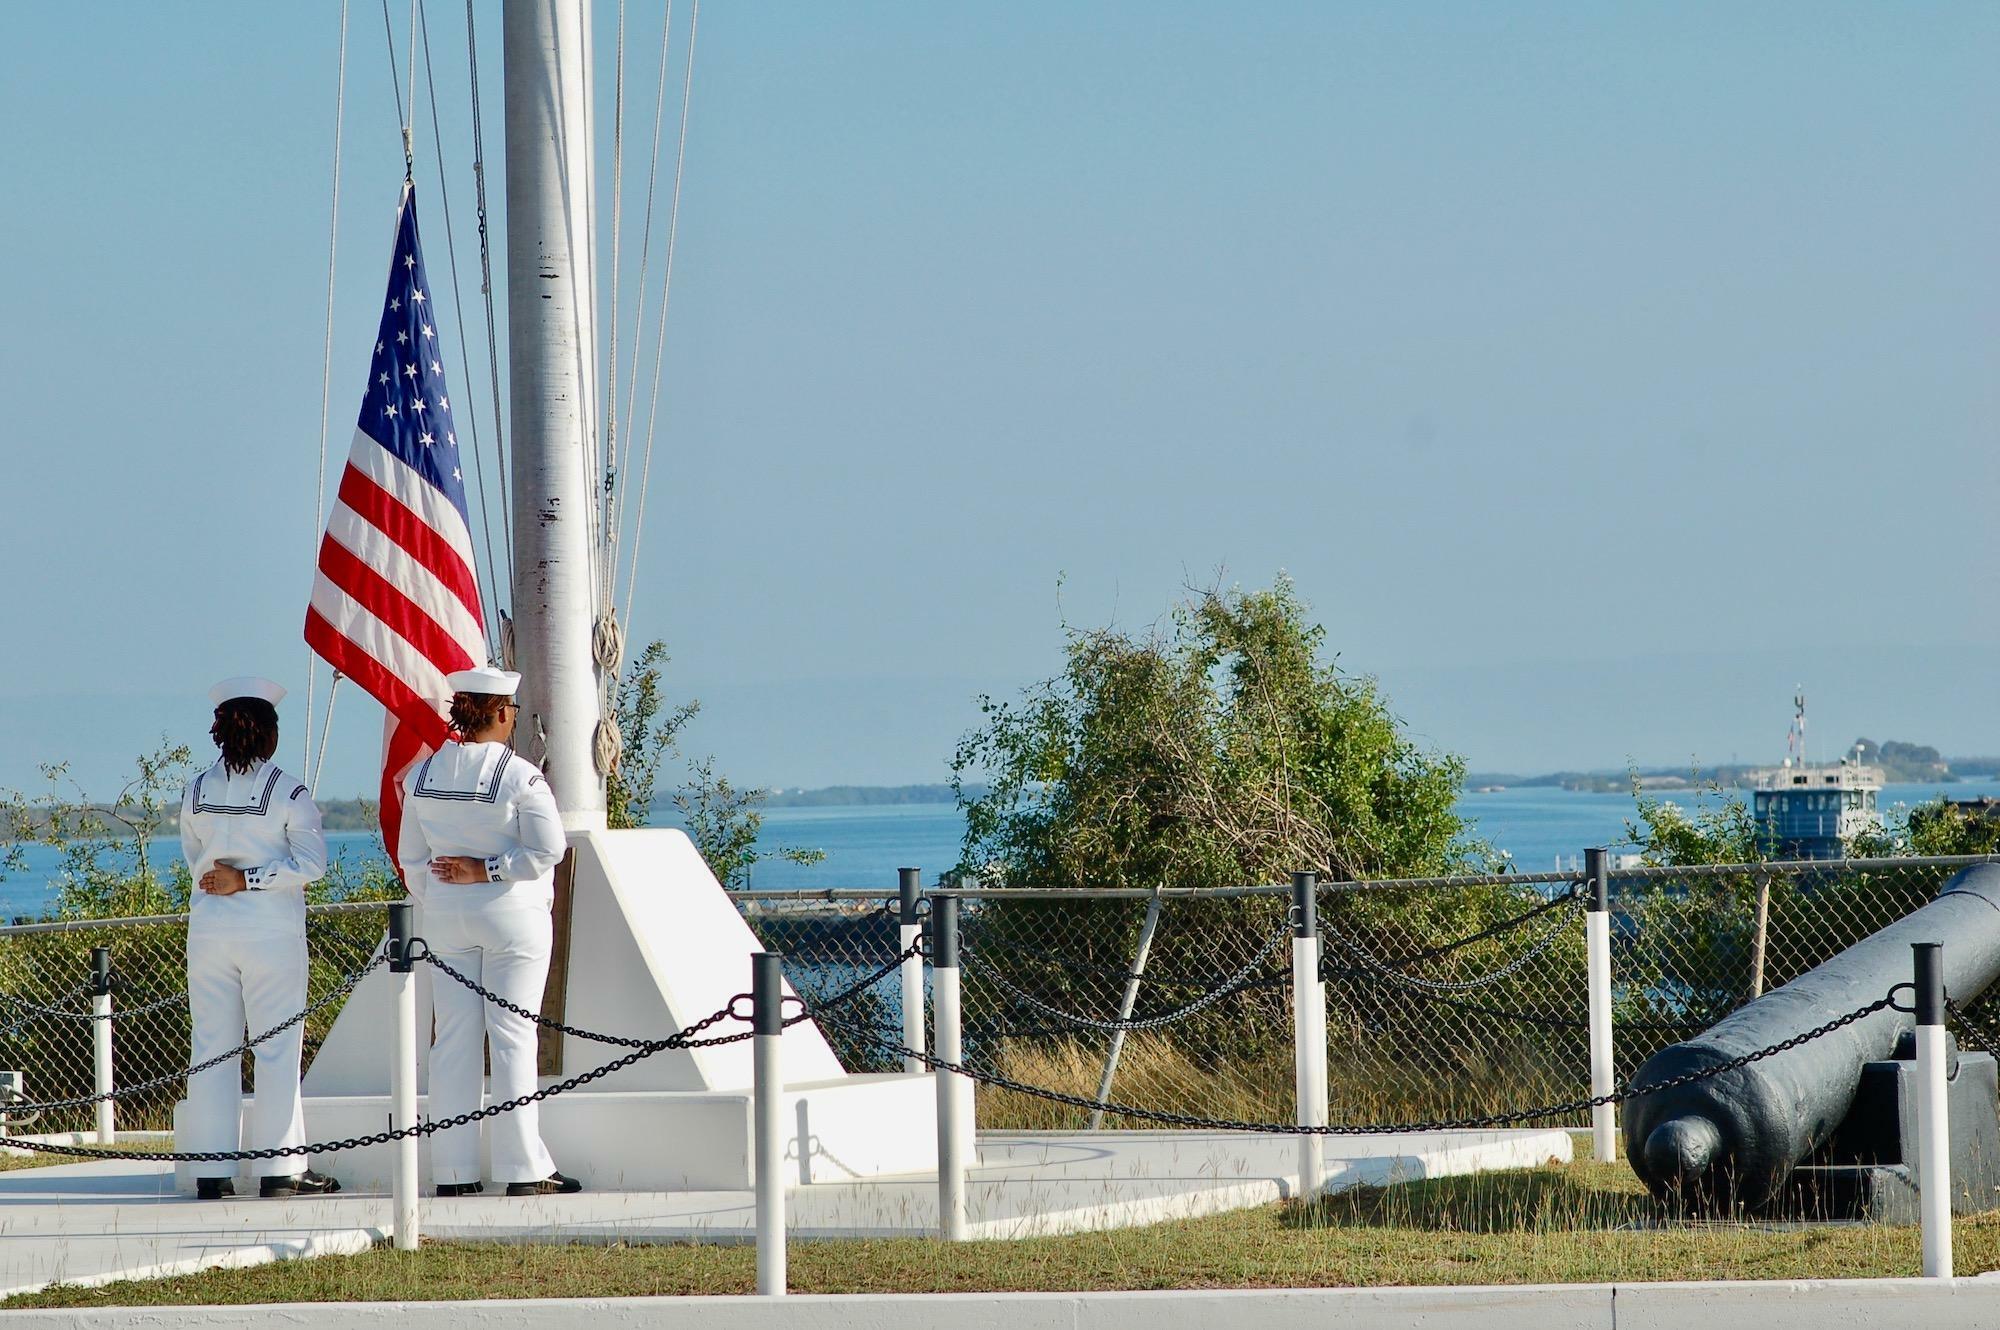 キューバの果てにある小さなアメリカ。滞在中、グアンタナモ米軍基地で行われる「カラーズ」という国旗掲揚の儀式を見学させてもらった。Guantanamo bay, Cuba  ©Kasumi Abe